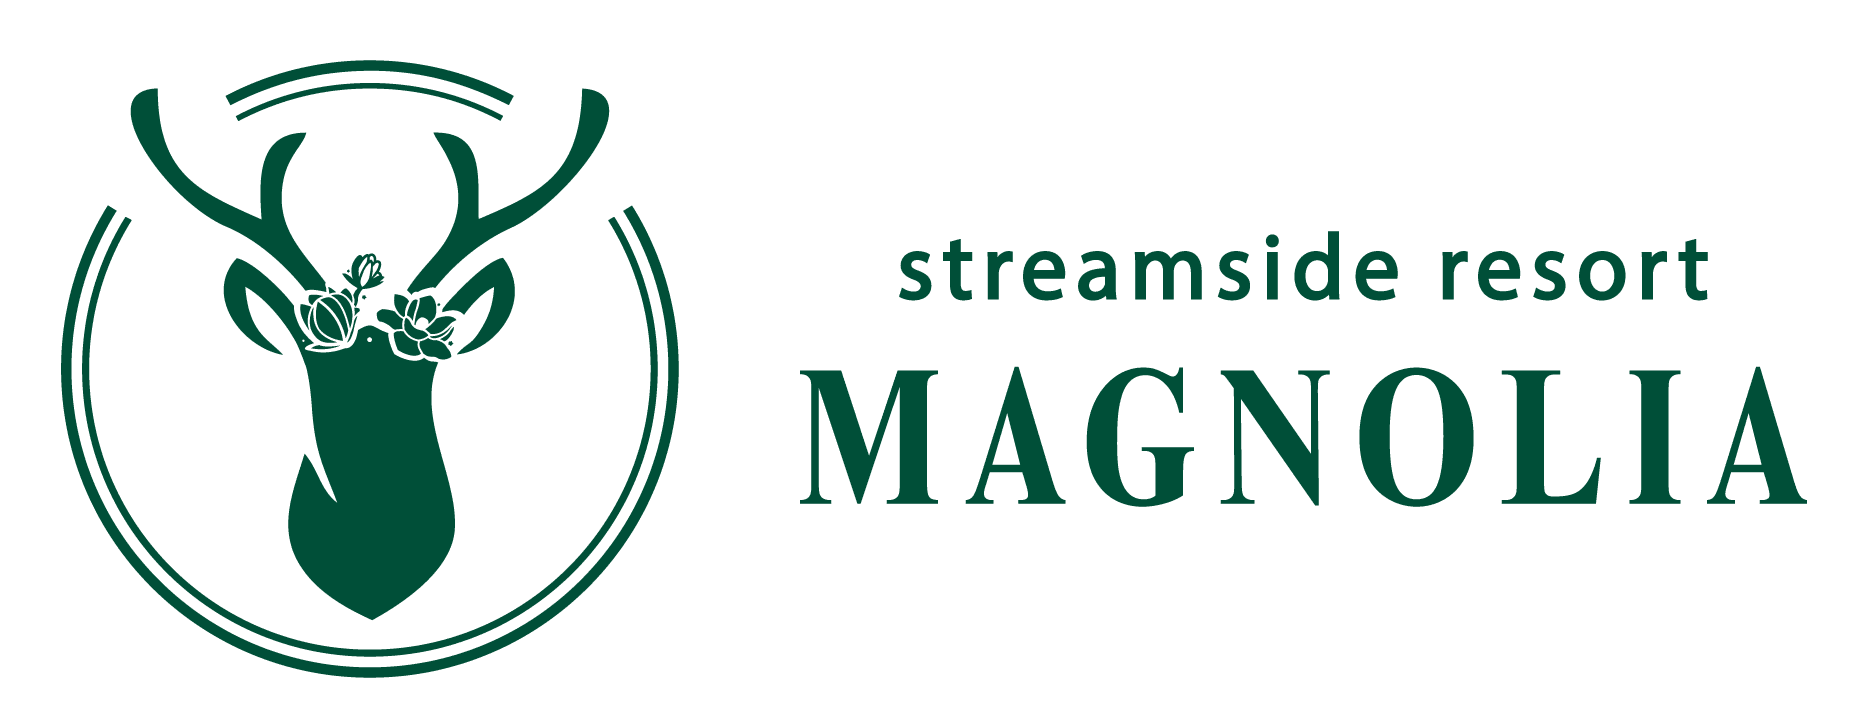 Magnolia Streamside Resort